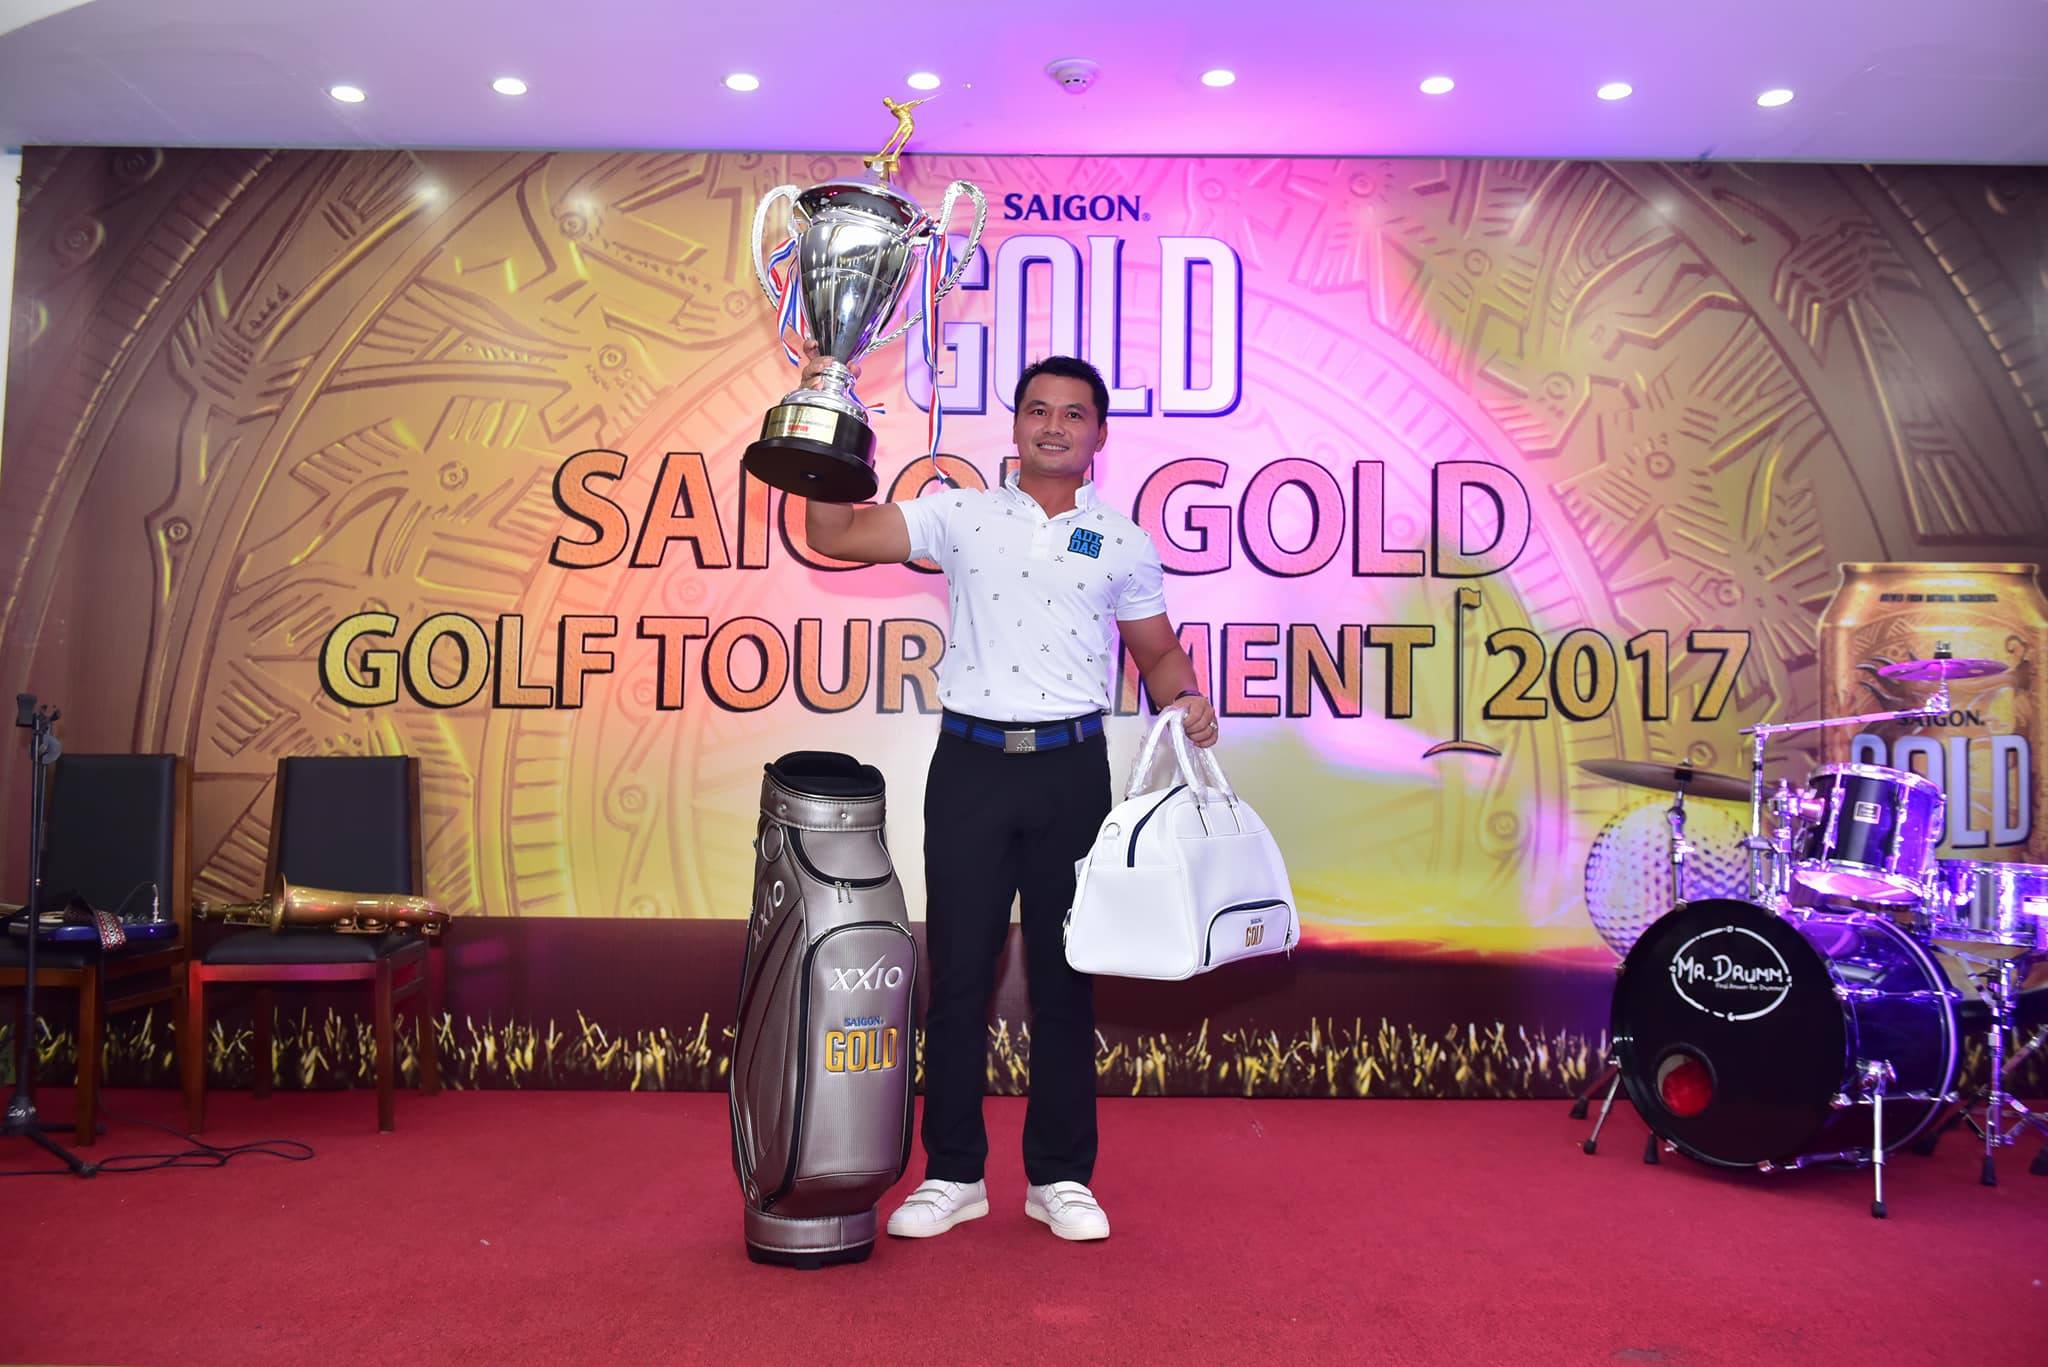 Golfer Thái Trung Hiếu vô địch giải SAIGON GOLD GOLF TOURNAMENT 2017 khu vực phía Bắc